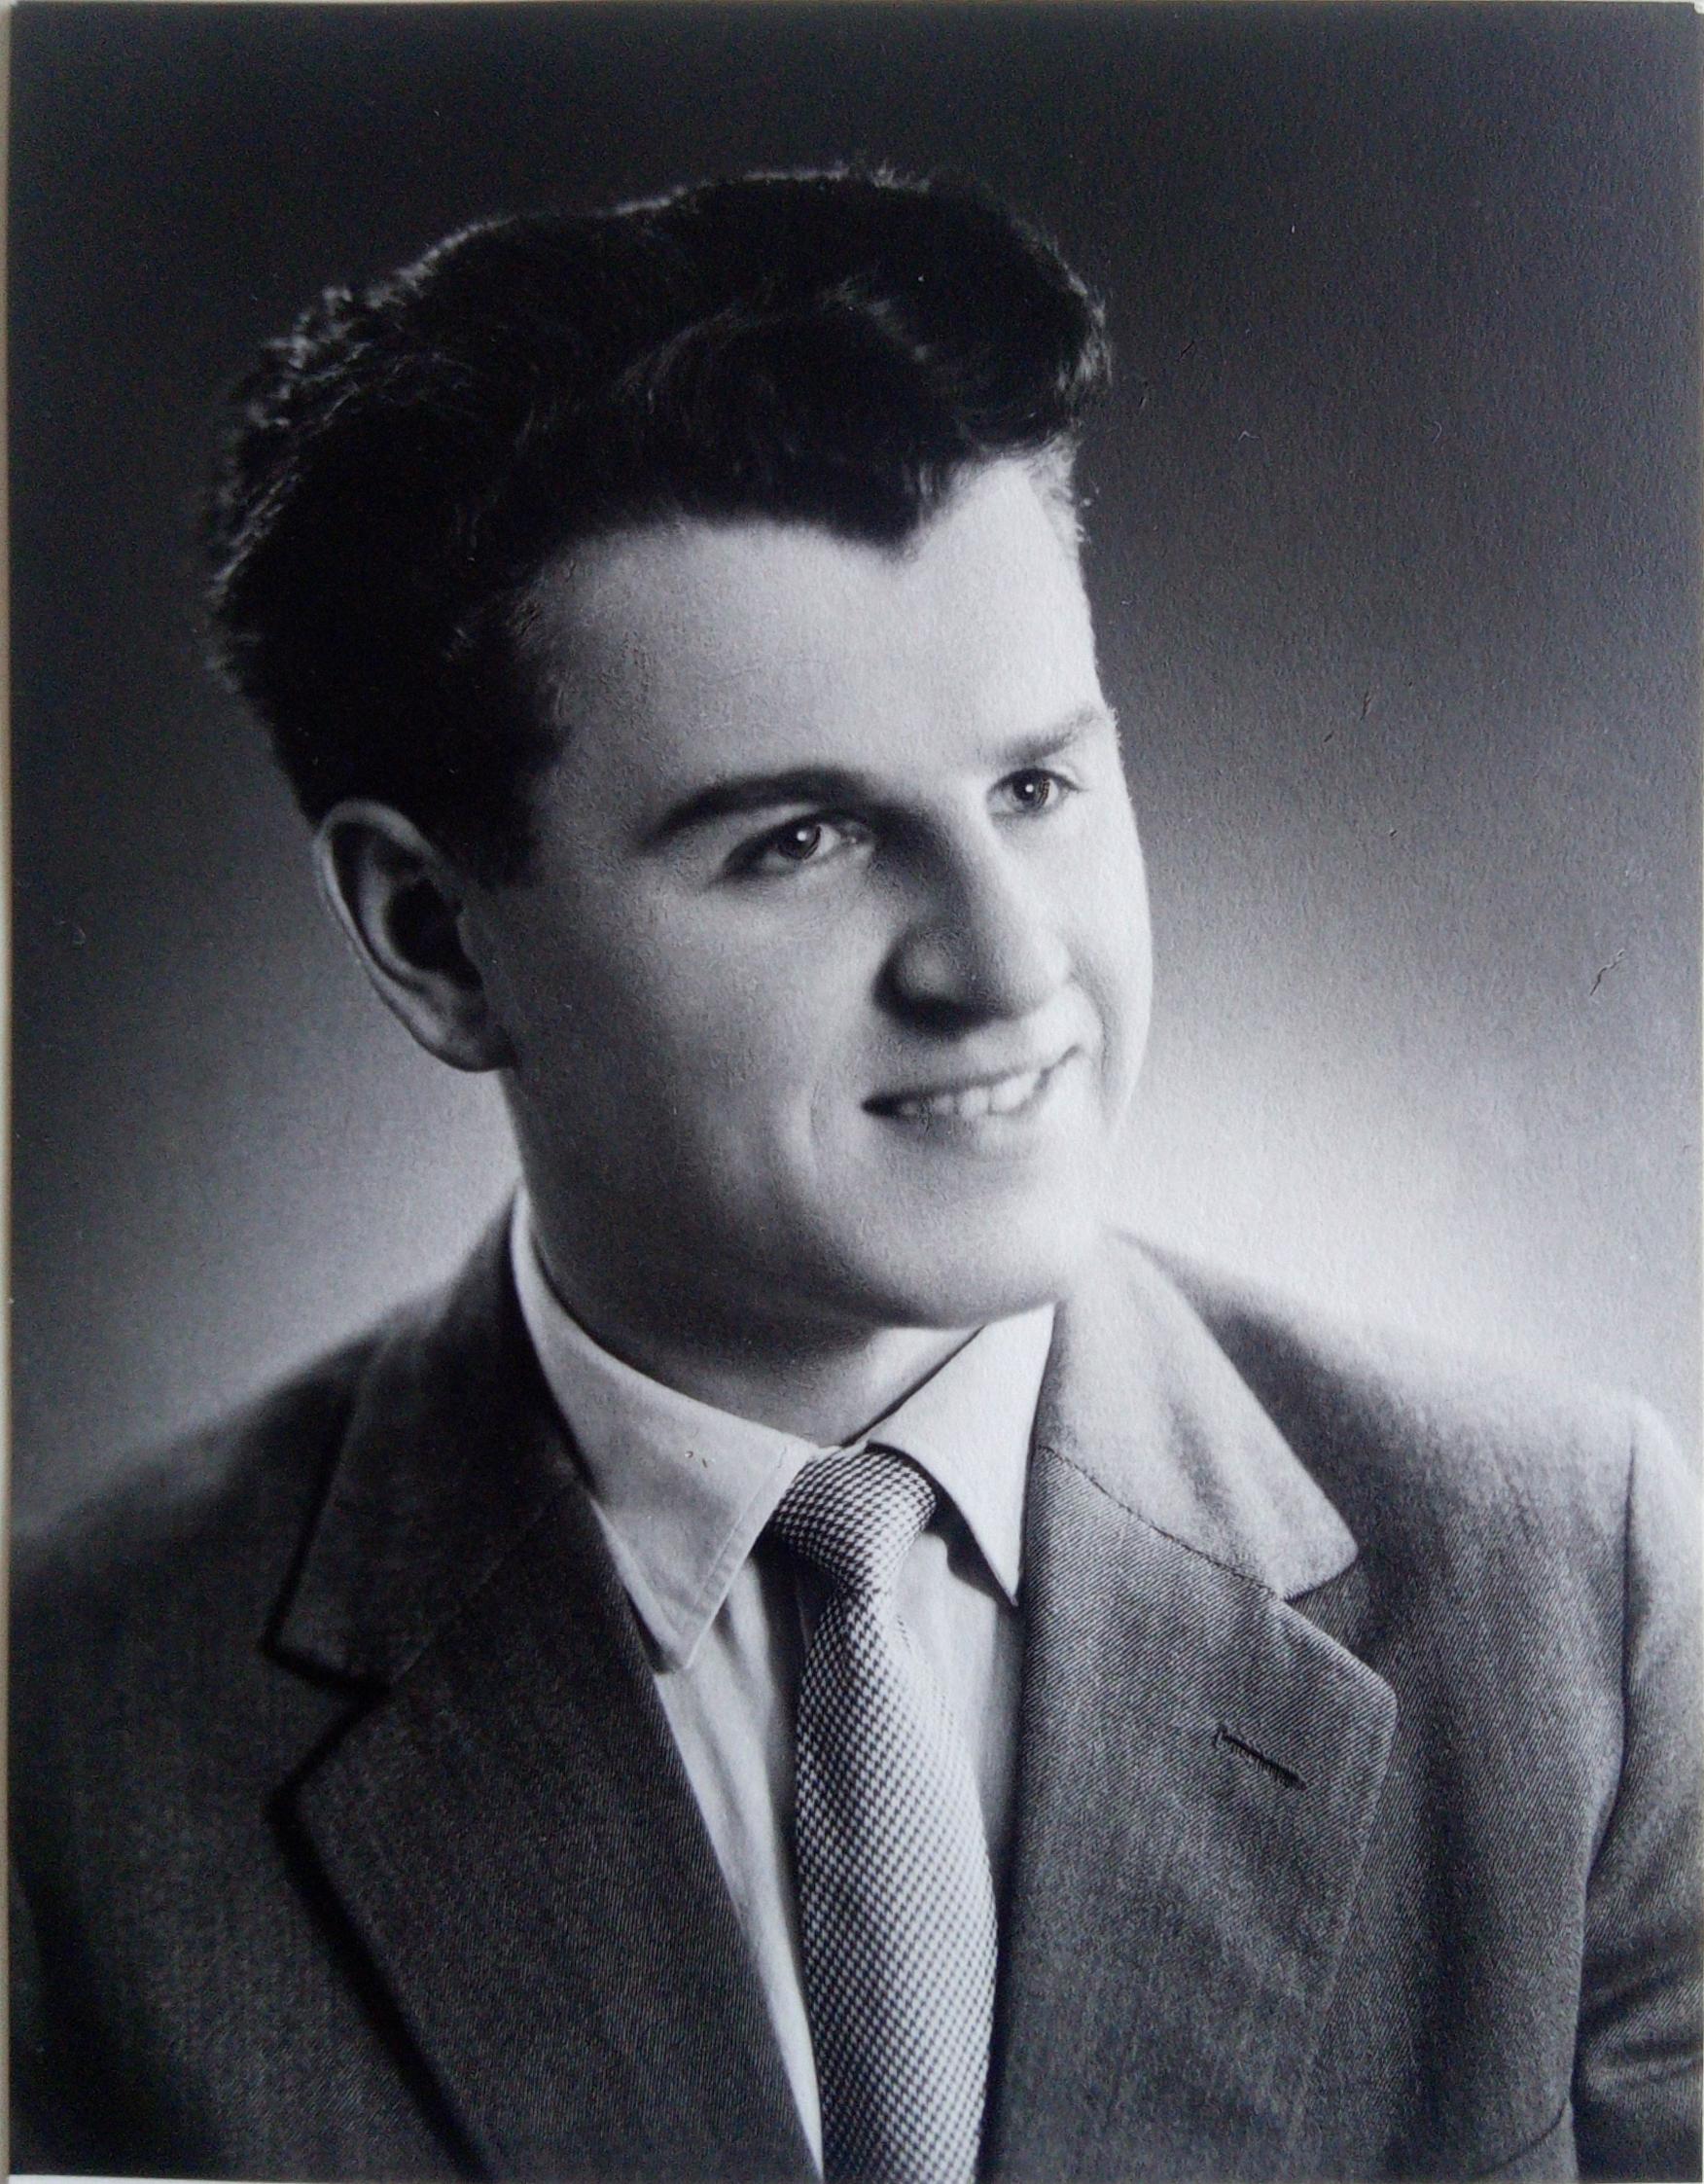 Oldřich Chadima na maturitní fotografii v roce 1959